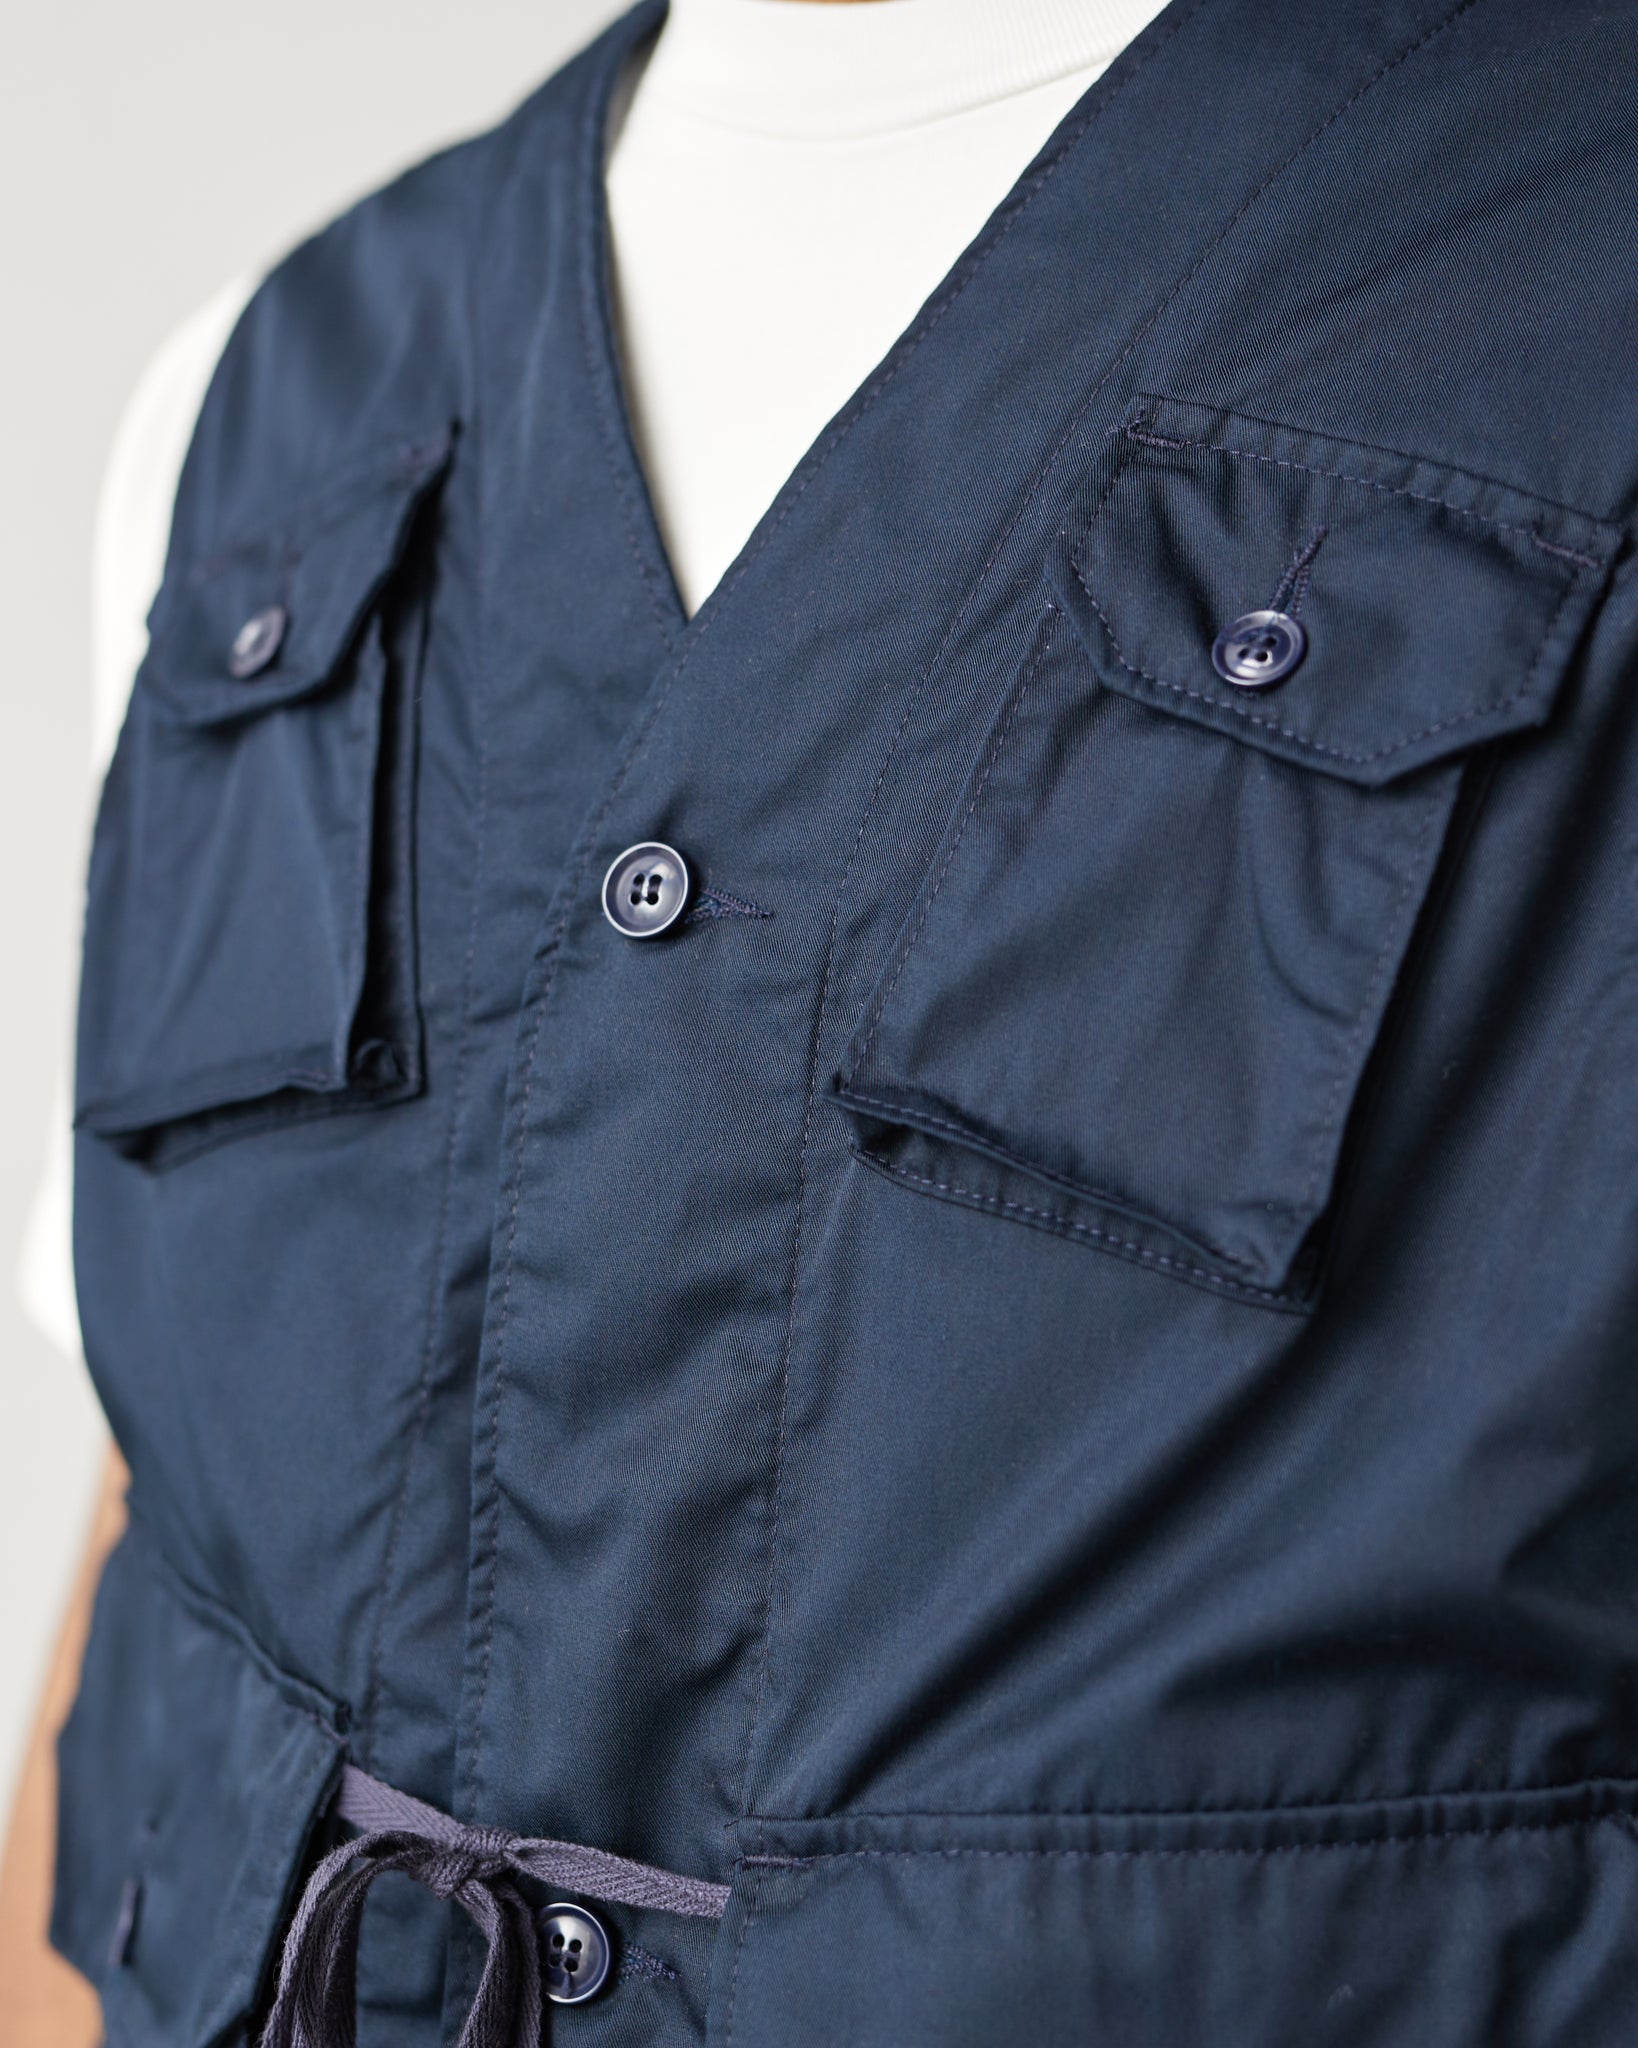 Engineered Garments C-1 Vest, Dark Navy